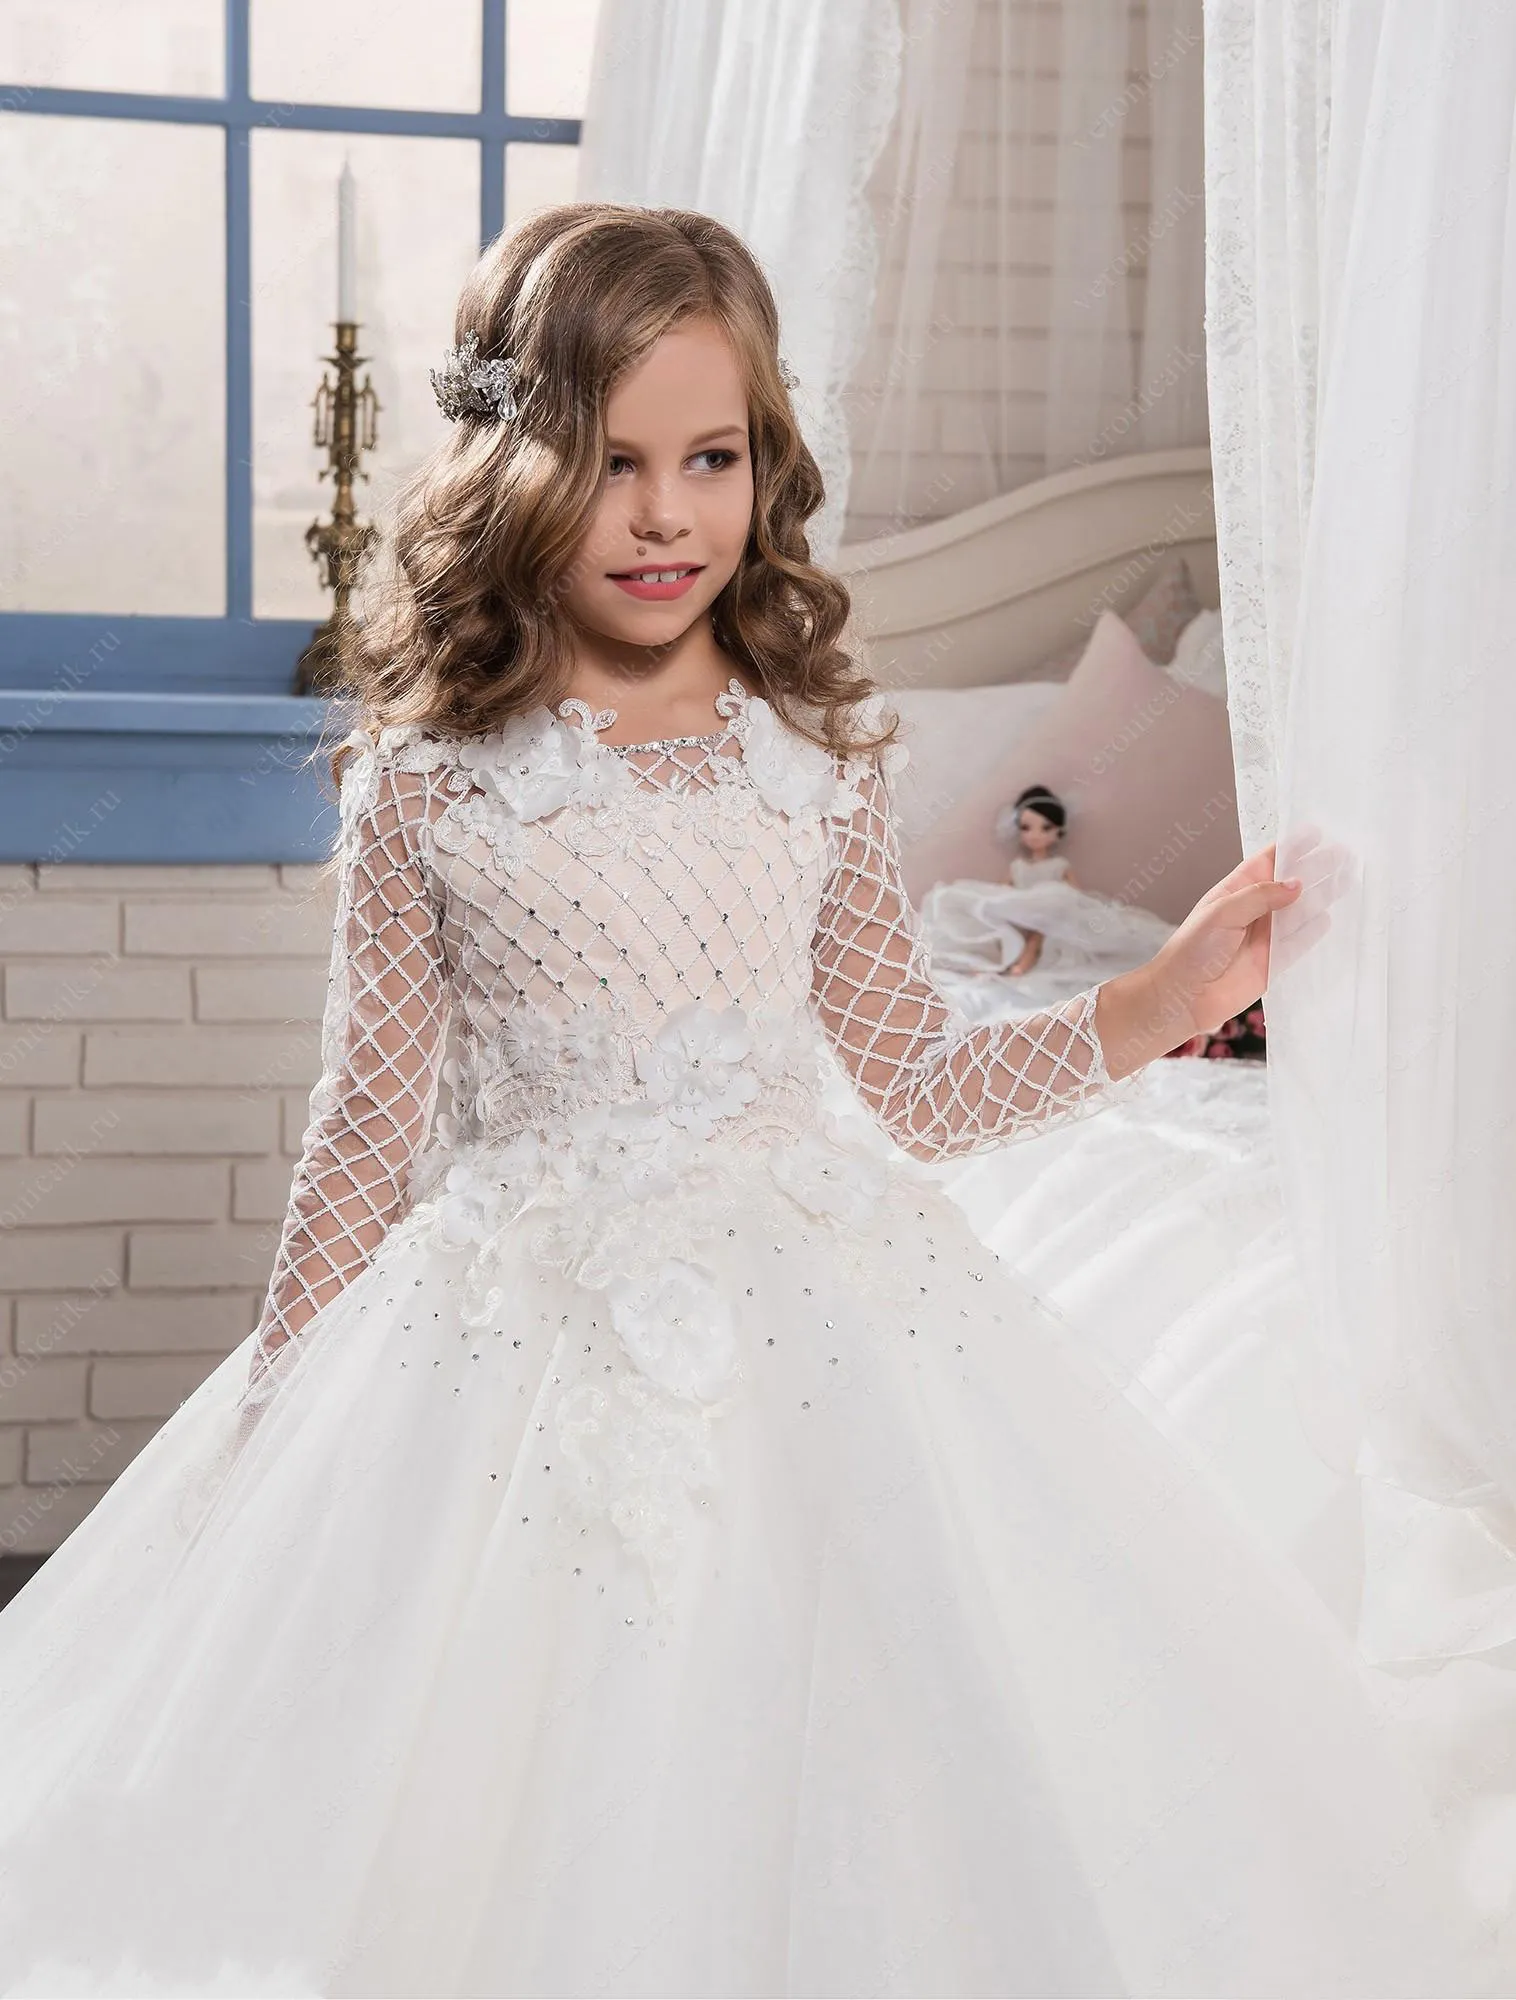 Prenses Dantel Hollow Çiçek Kız Elbise Düğün için 2018 Yeni Sheer Uzun Kollu İlk Communion Doğum Günü Partisi Elbiseler Kızlar Pageant Elbise